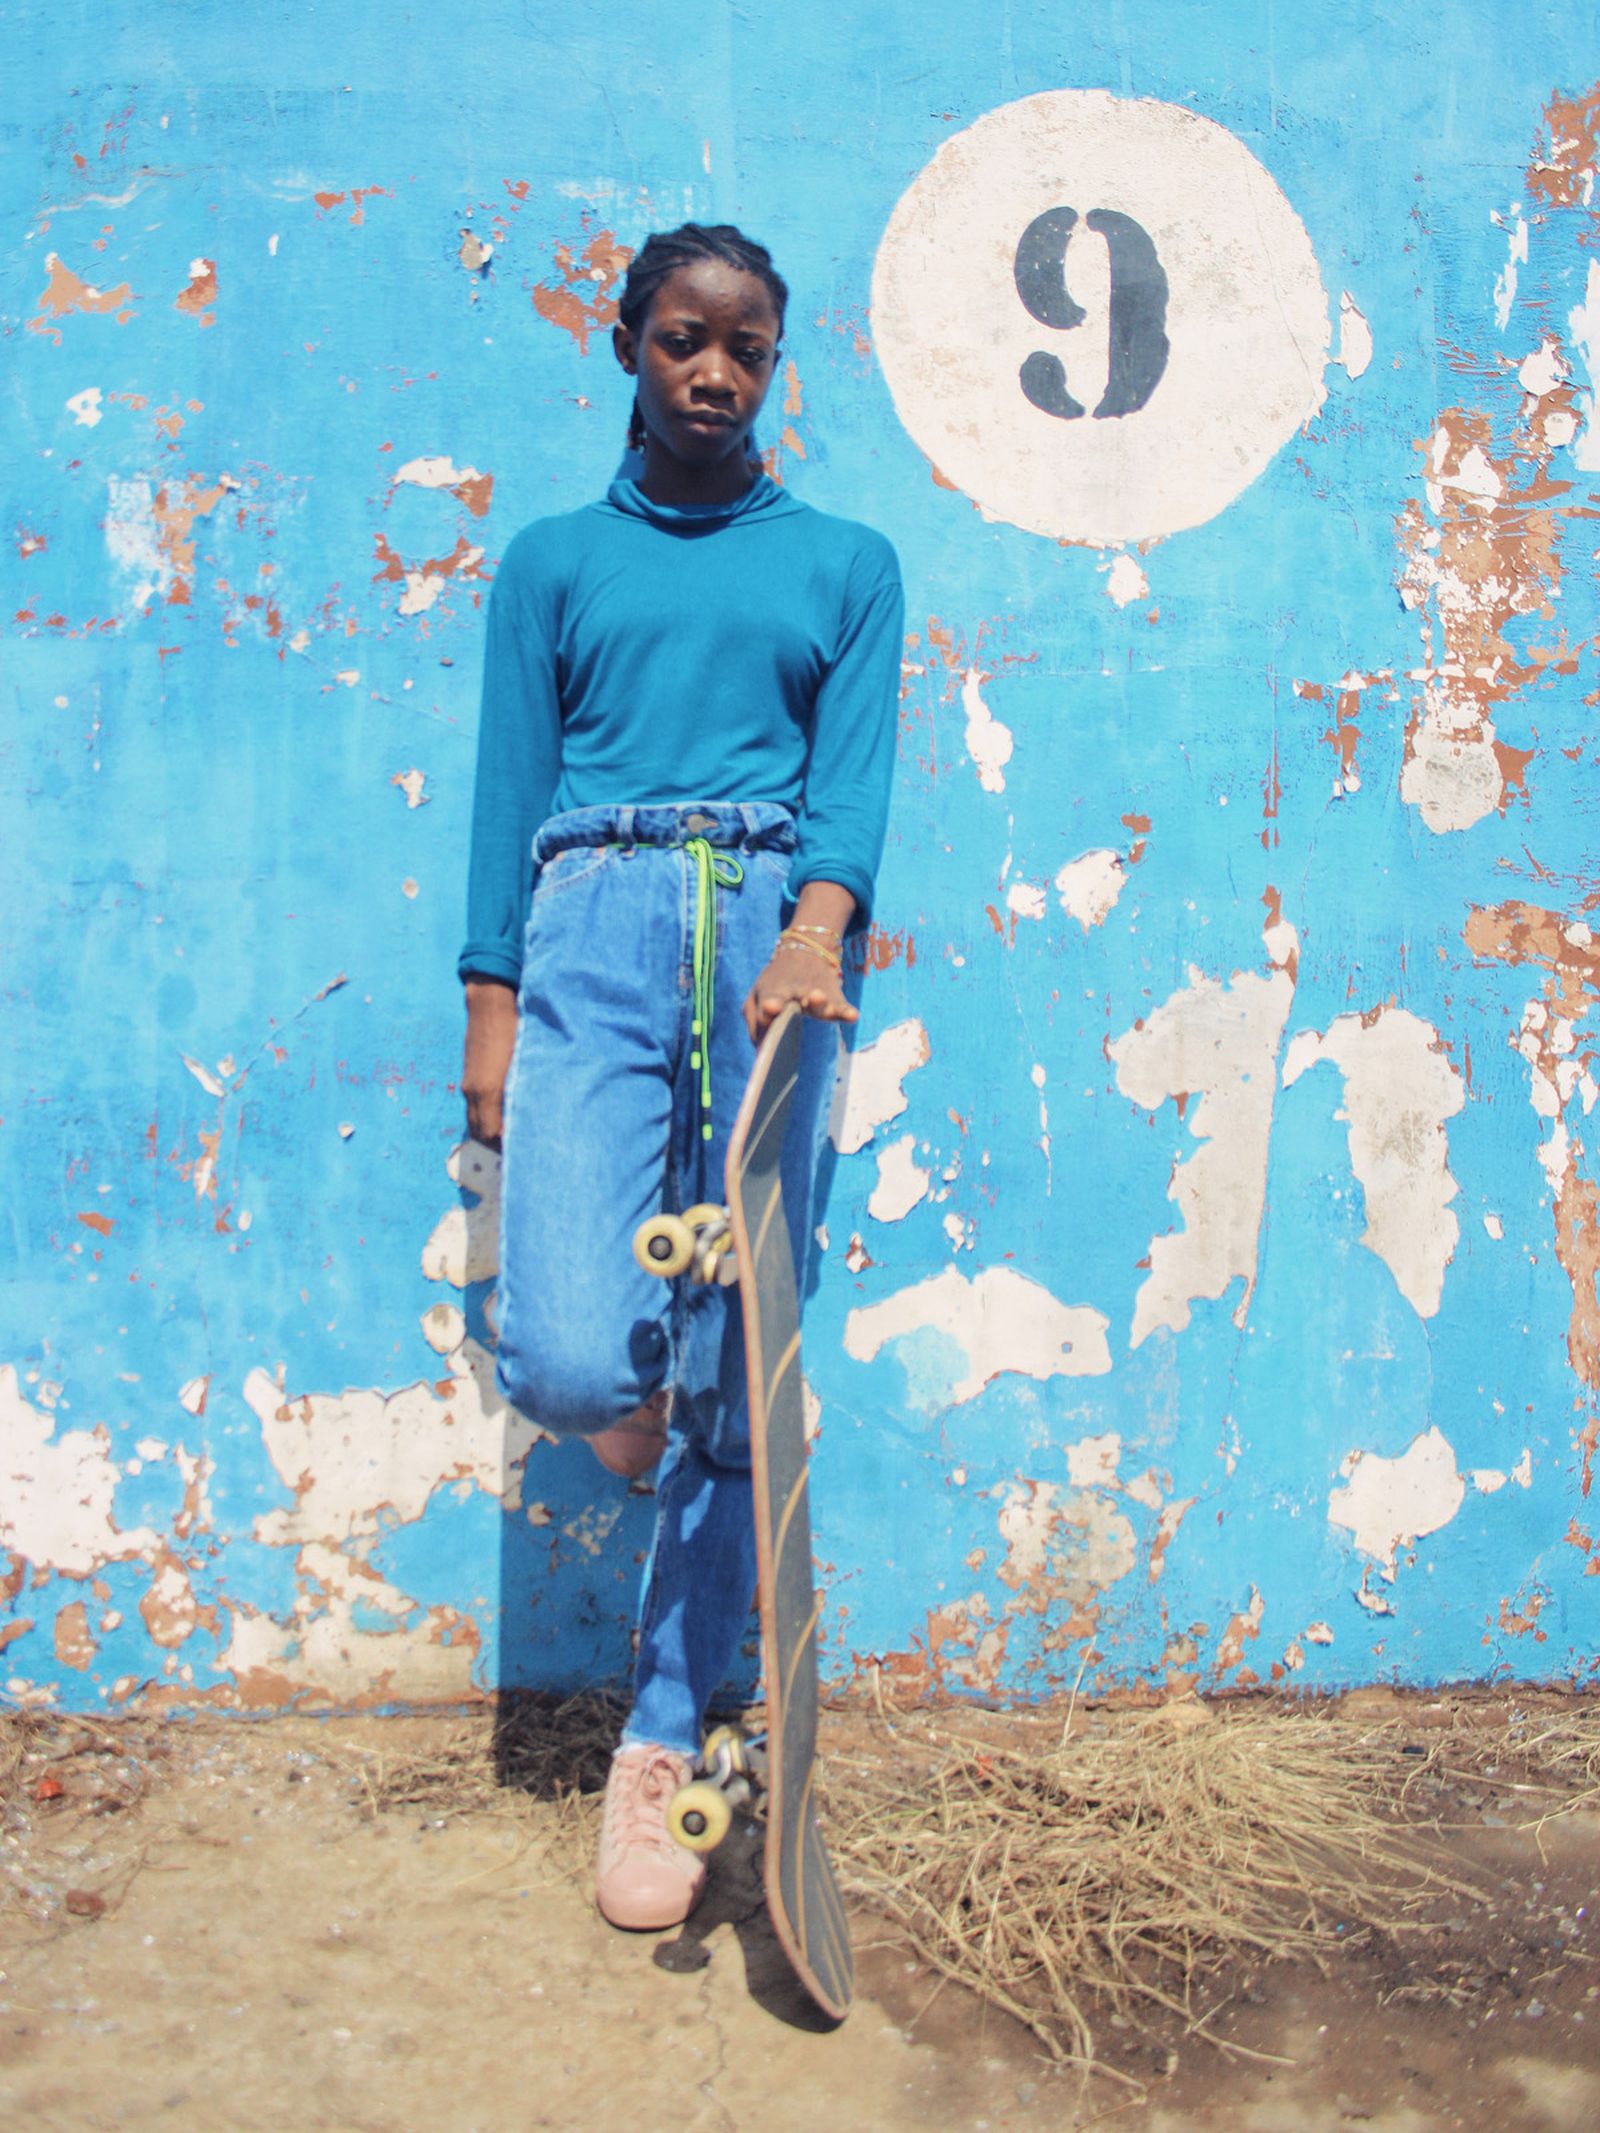 ghanas-first-skate-park-much-skateboarding-05